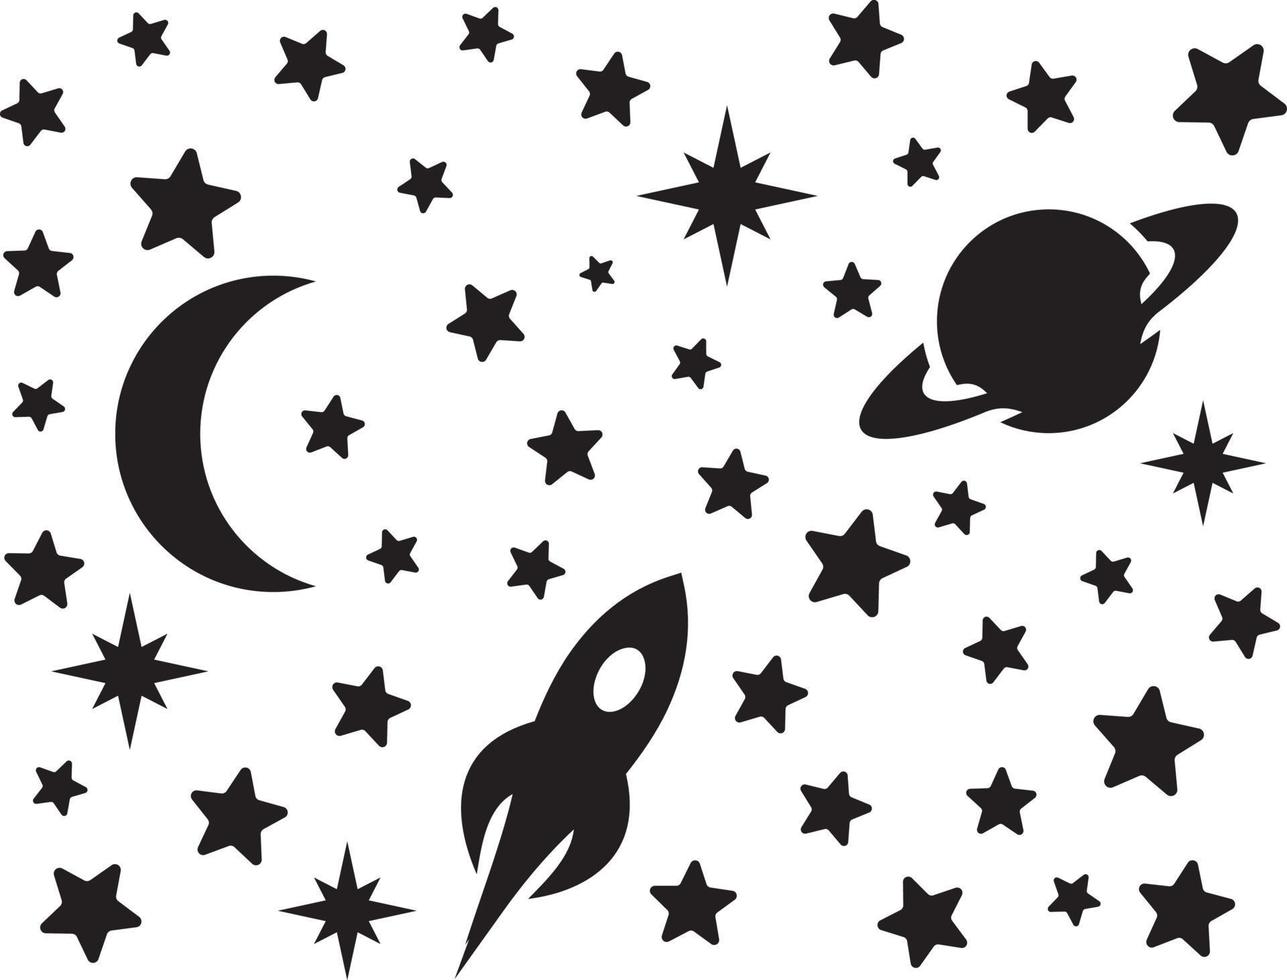 stjärnor, måne, planeter och raket siluett vektor